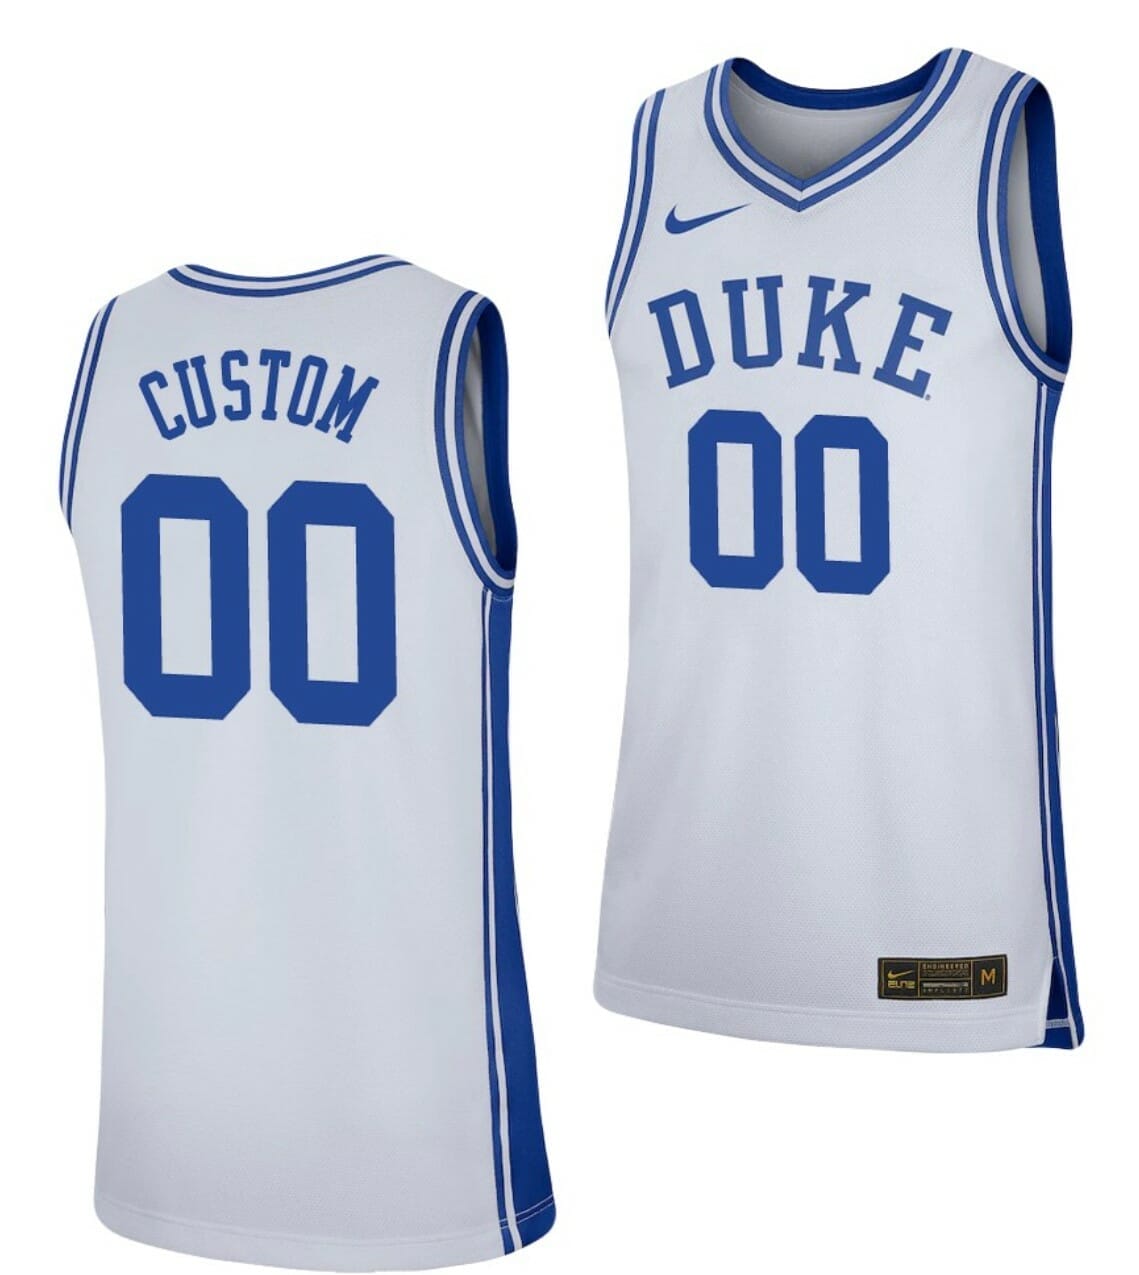 Available] Buy New Custom Duke Blue Devils Jersey White